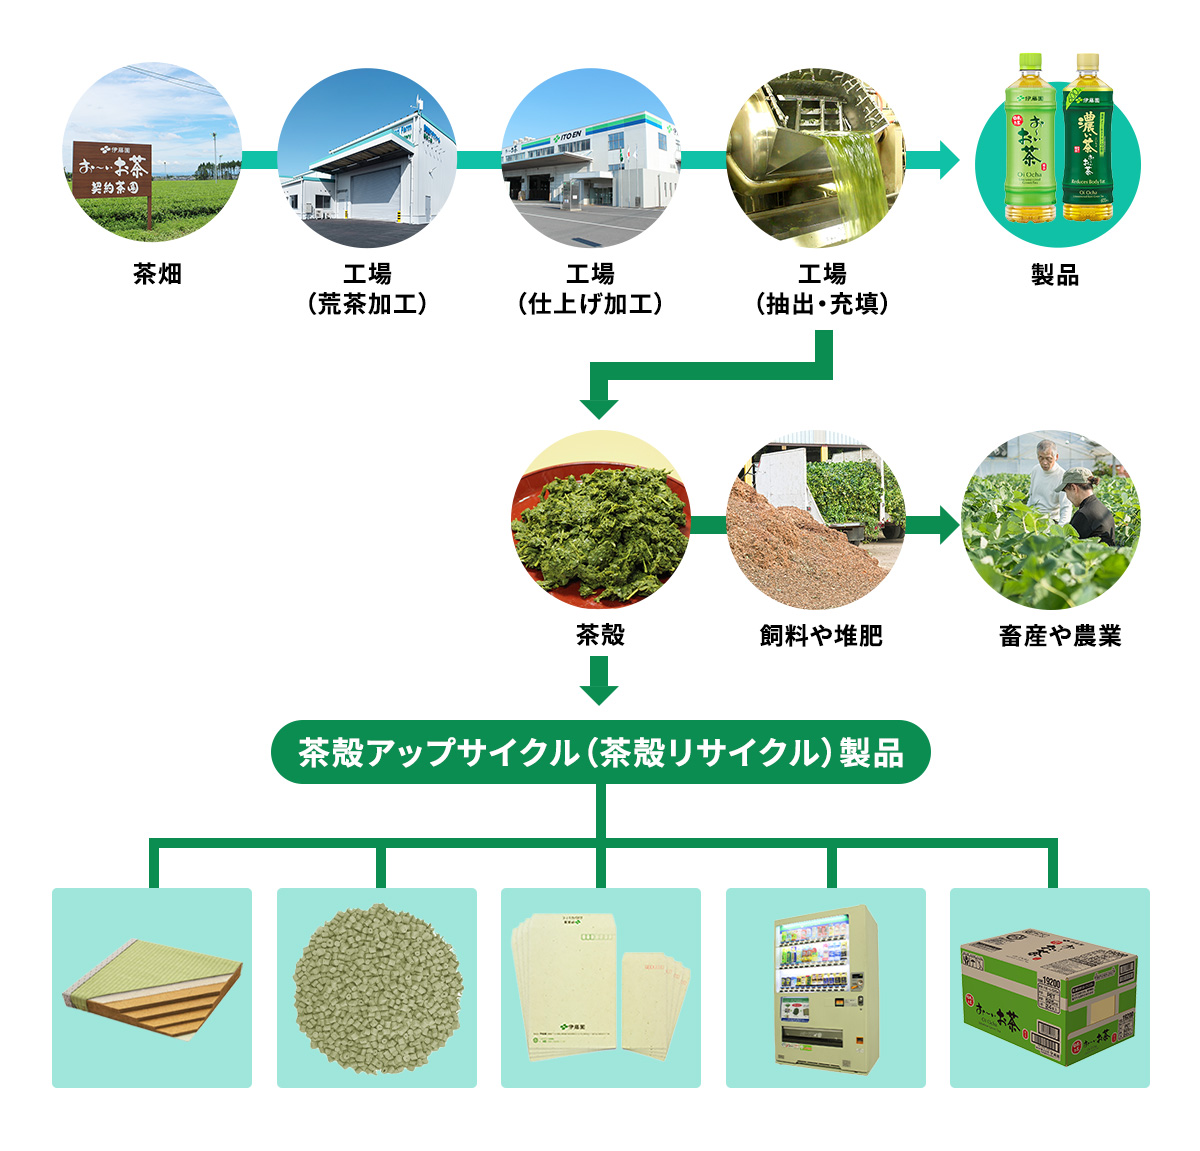 茶殻リサイクルシステムの全体像